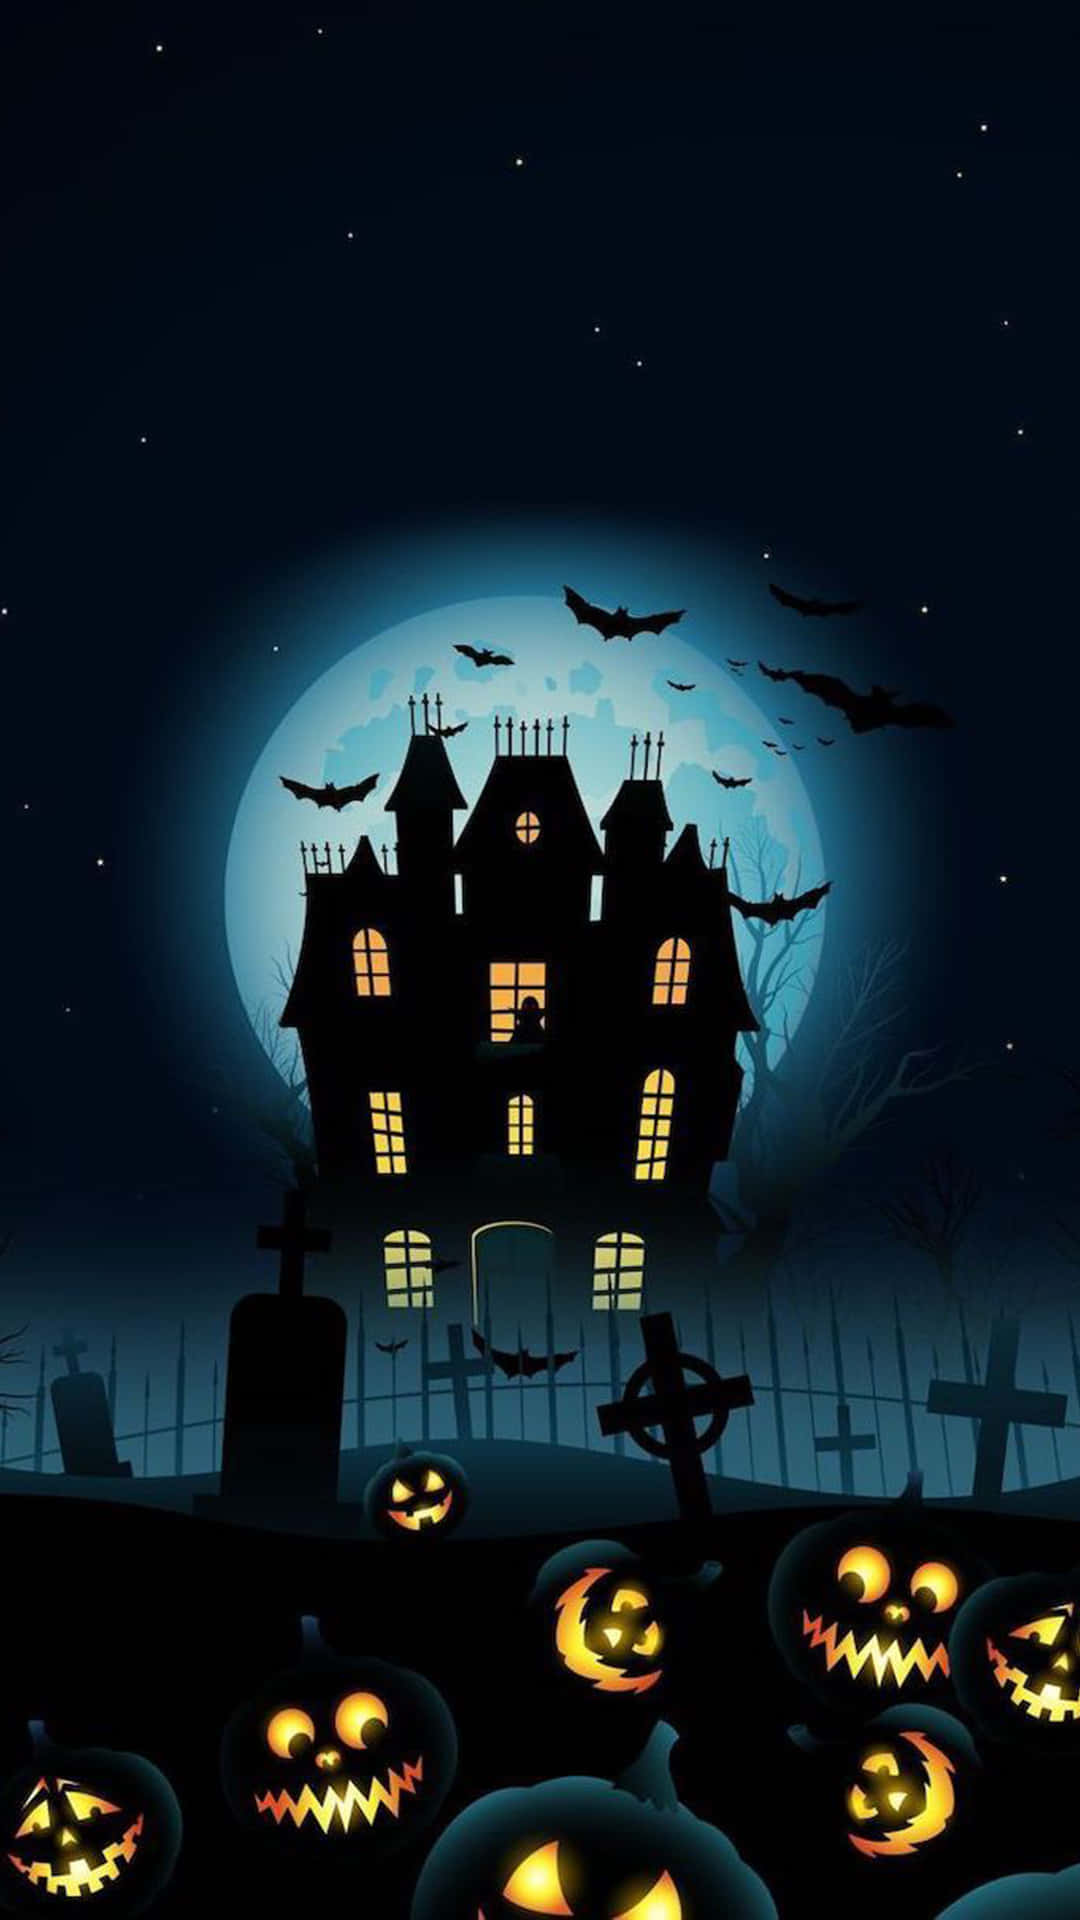 Bạn yêu thích những bộ phim kinh dị về biệt thự ma ám? Hãy xem ngay hình ảnh Haunted Mansion Graphic để khám phá không gian ám ảnh của một ngôi nhà ma ám đầy bí ẩn.